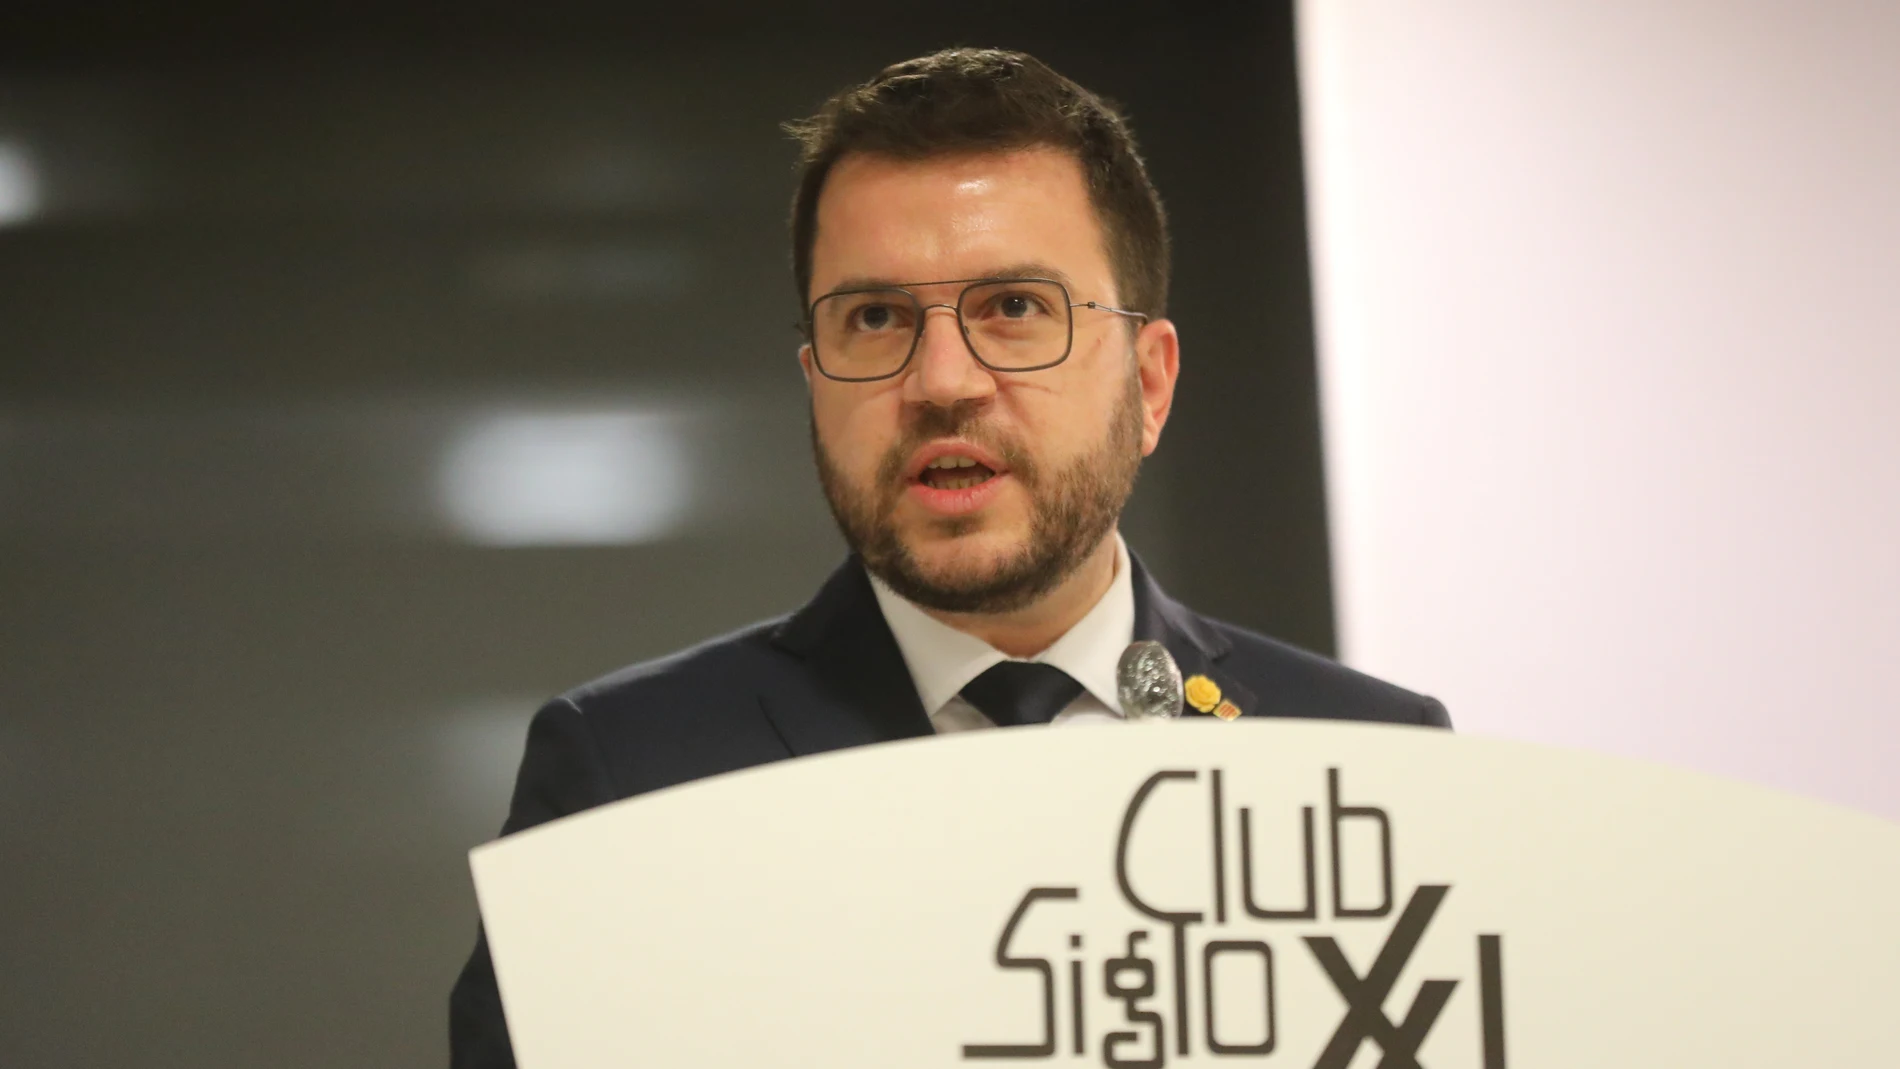 El presidente de la Generalitat de Cataluña, Pere Aragonès, protagoniza un coloquio organizado por el Club Siglo XXI